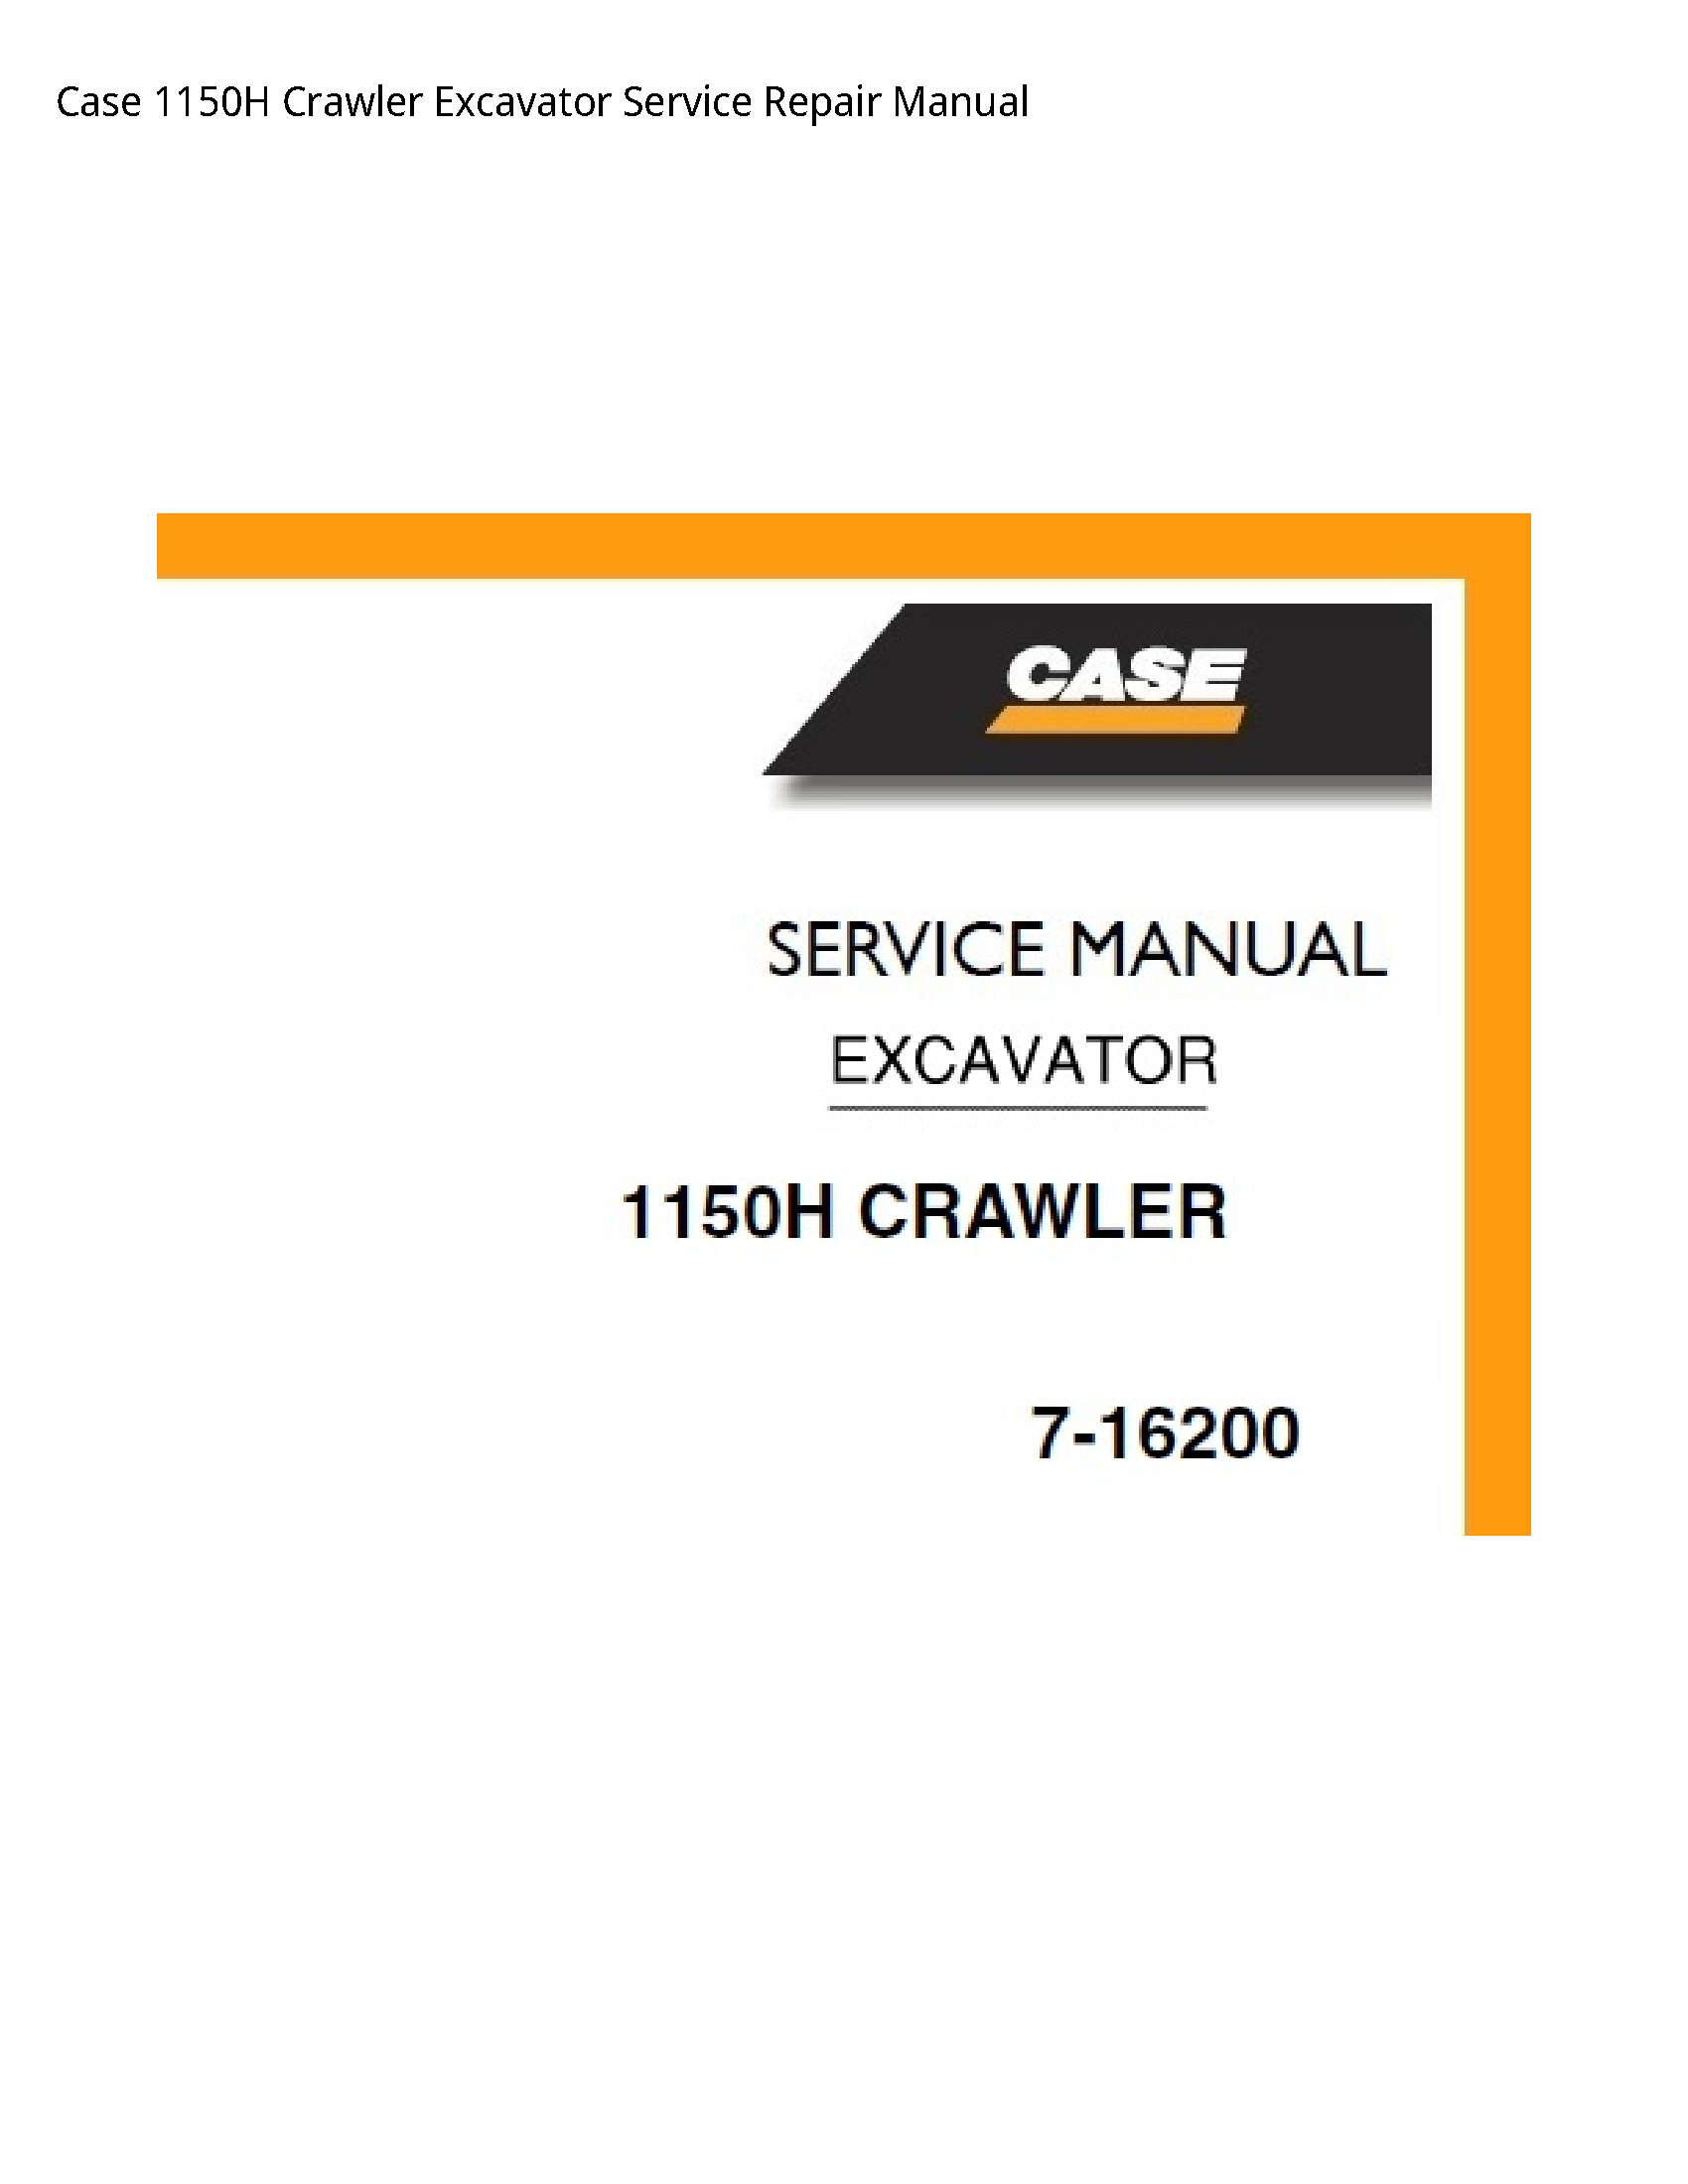 Case/Case IH 1150H Crawler Excavator manual